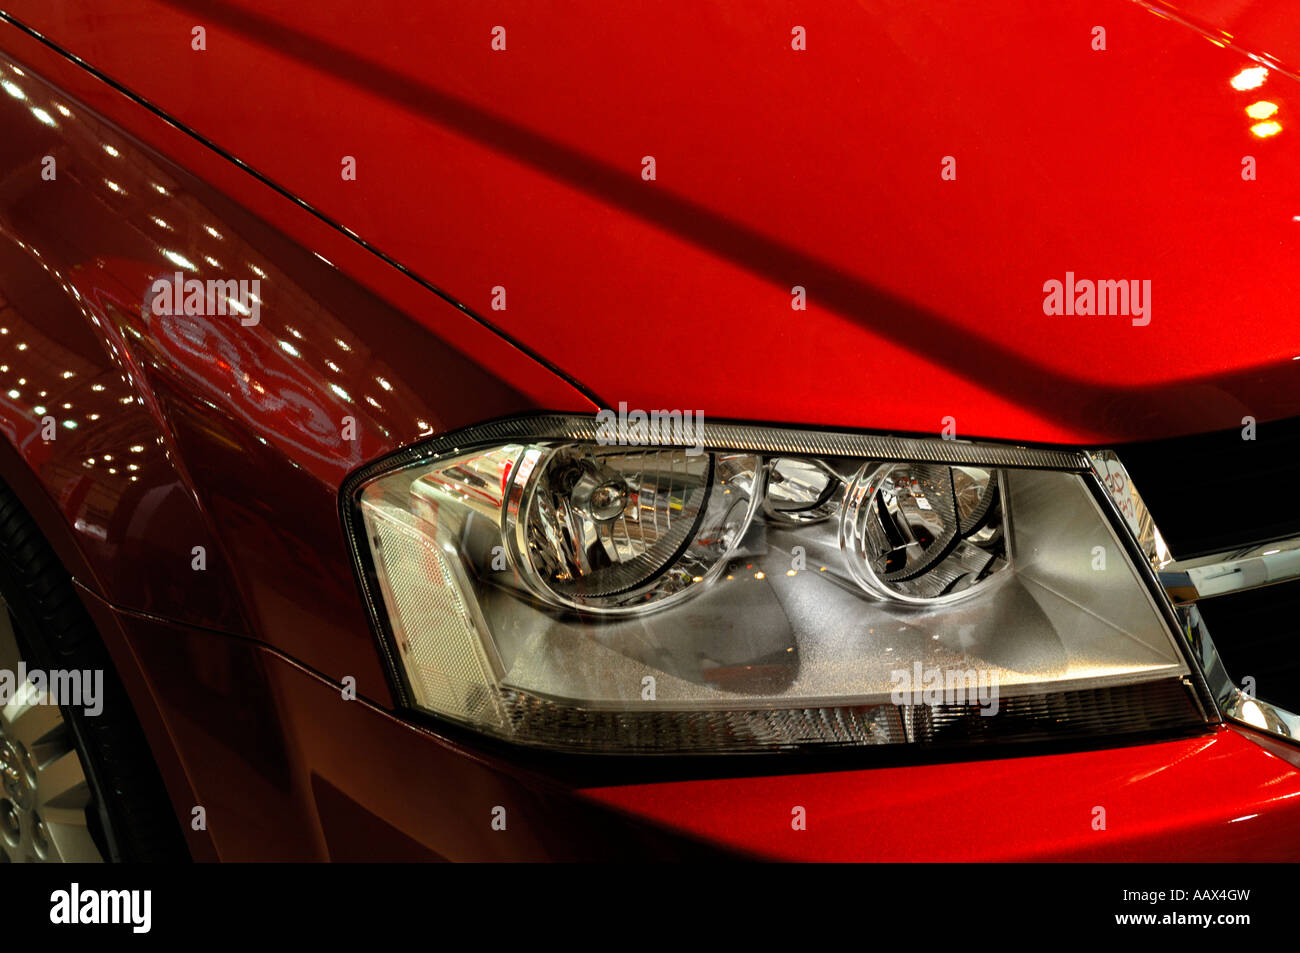 Red car Dodge Avenger JS headlight Stock Photo